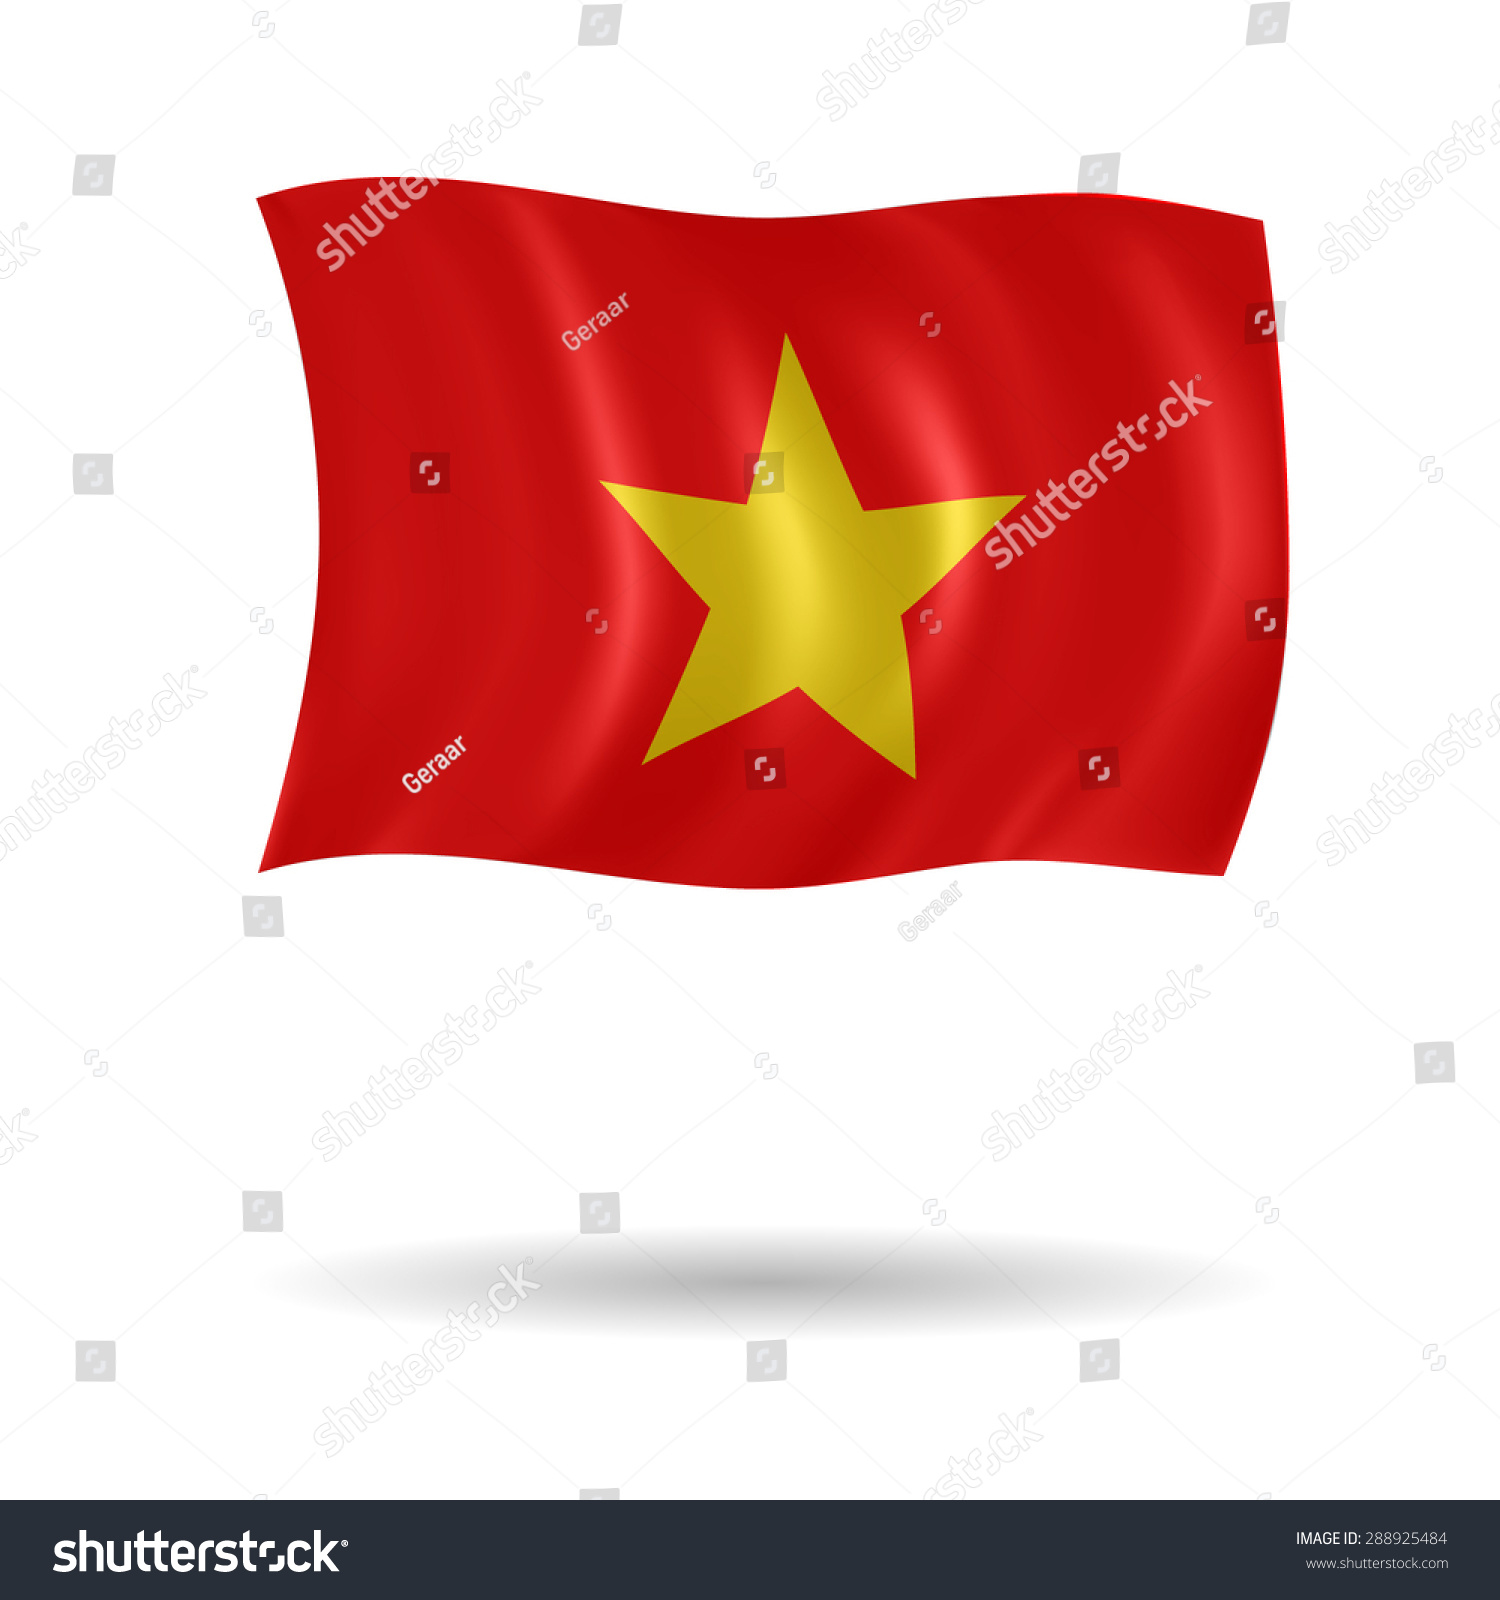 Download Vector Flag Of Vietnam - 288925484 : Shutterstock